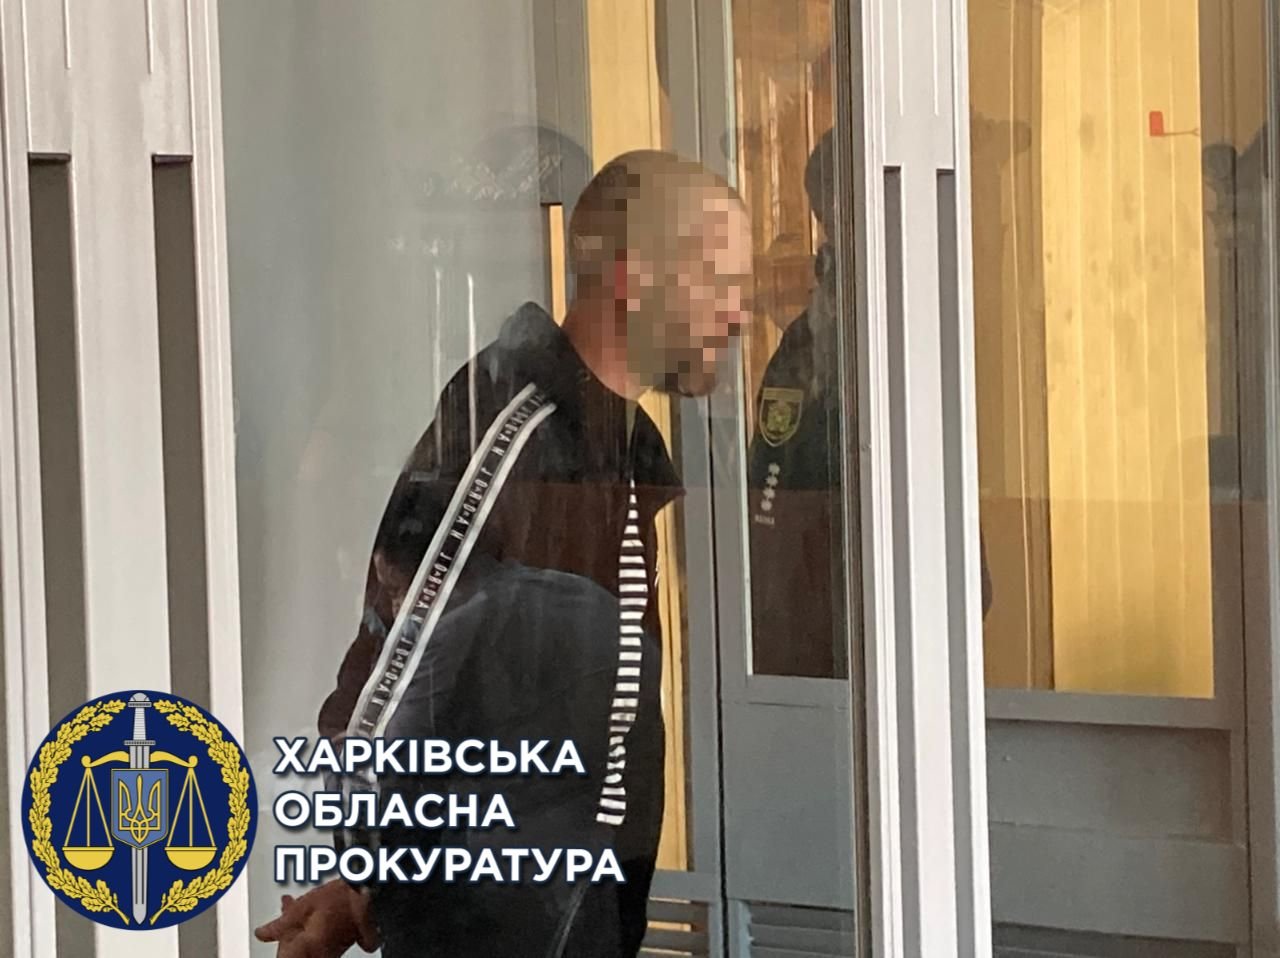 Харьковского подрывника, который бросил в людей гранату, могут посадить на пожизненный срок